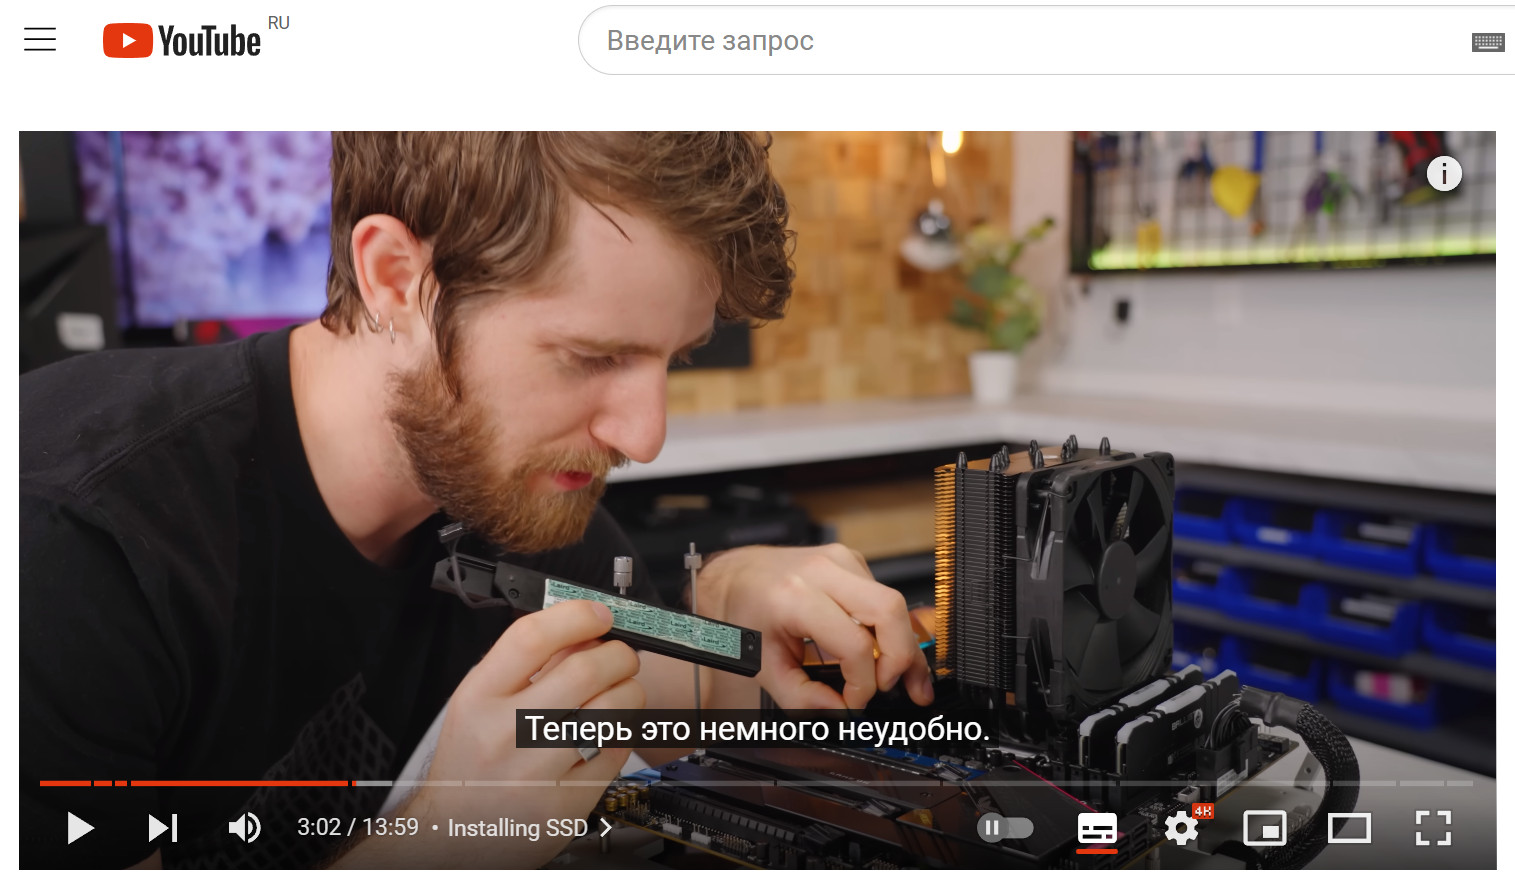 Как смотреть иностранные видео на YouTube с автоматическим переводом?